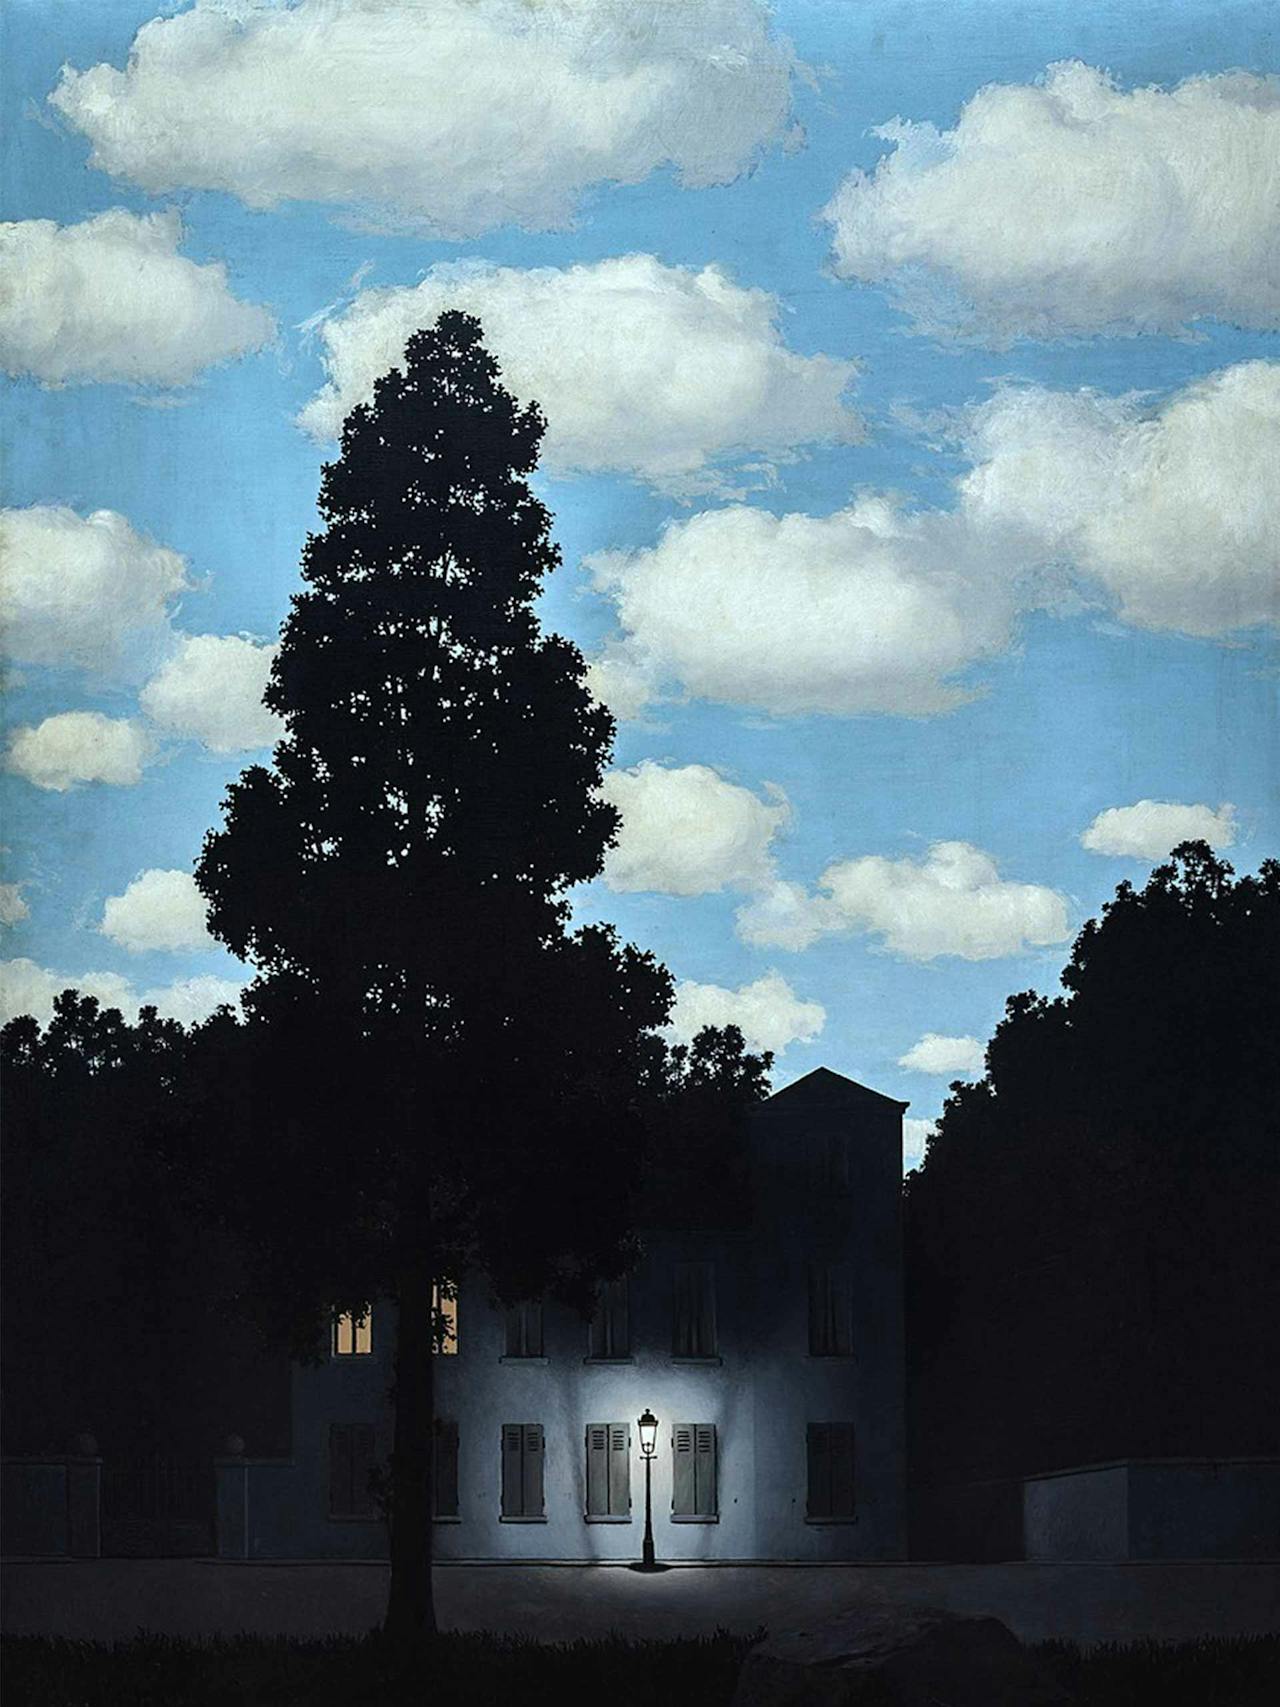 l’Empire des Lumières by René Magritte (1954)